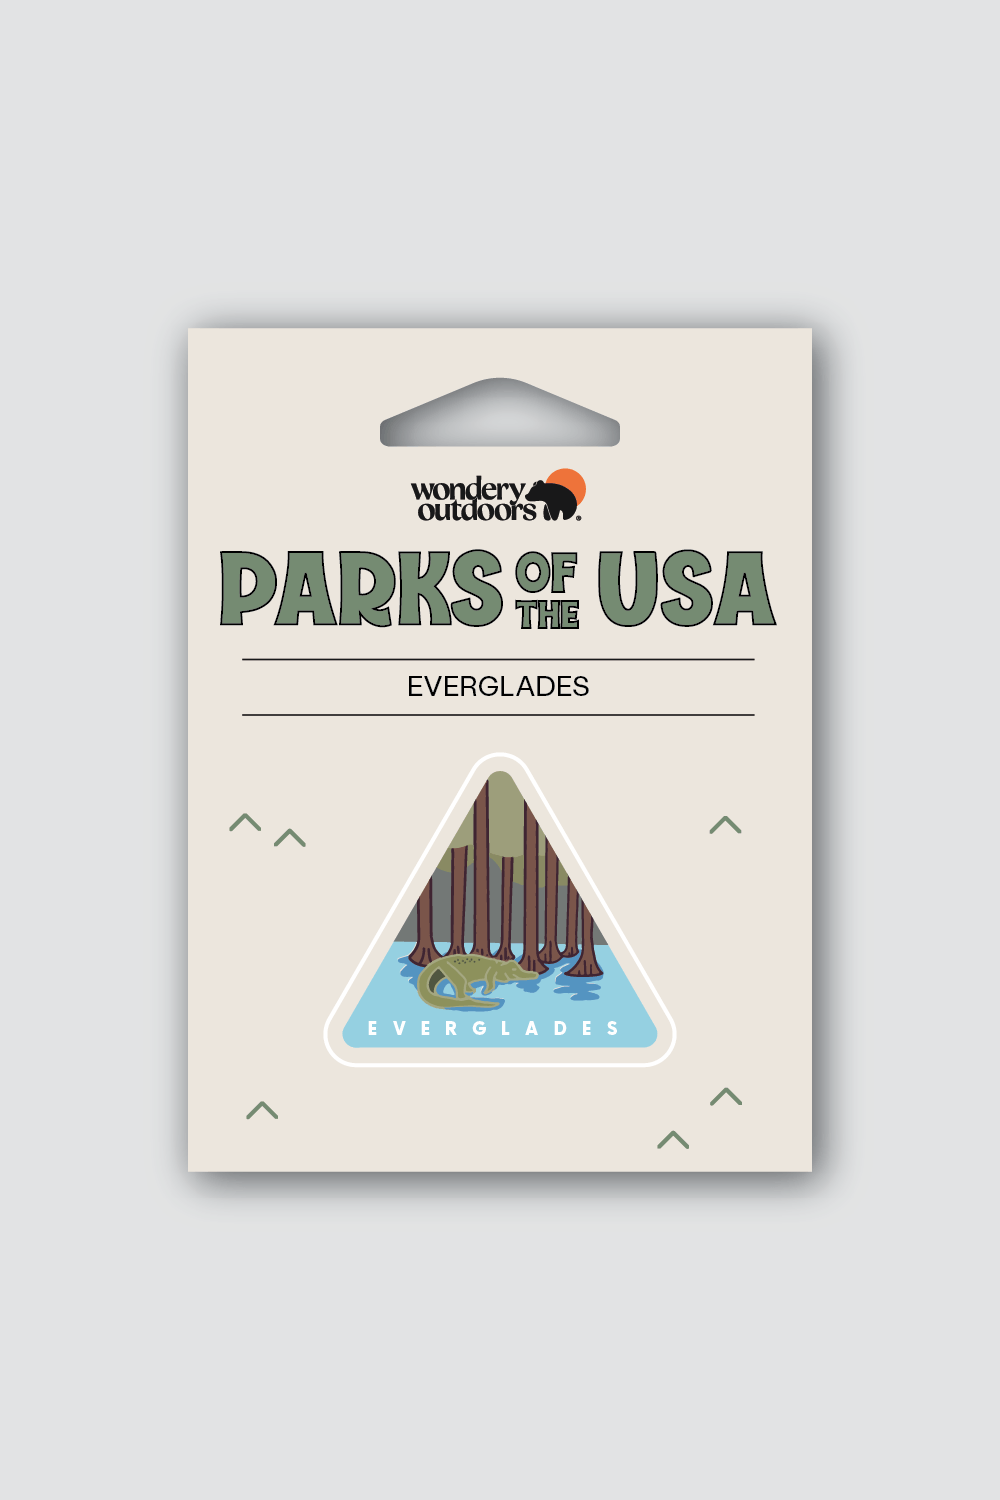 #national park_everglades _USA National Parks souvenir sticker gift sets